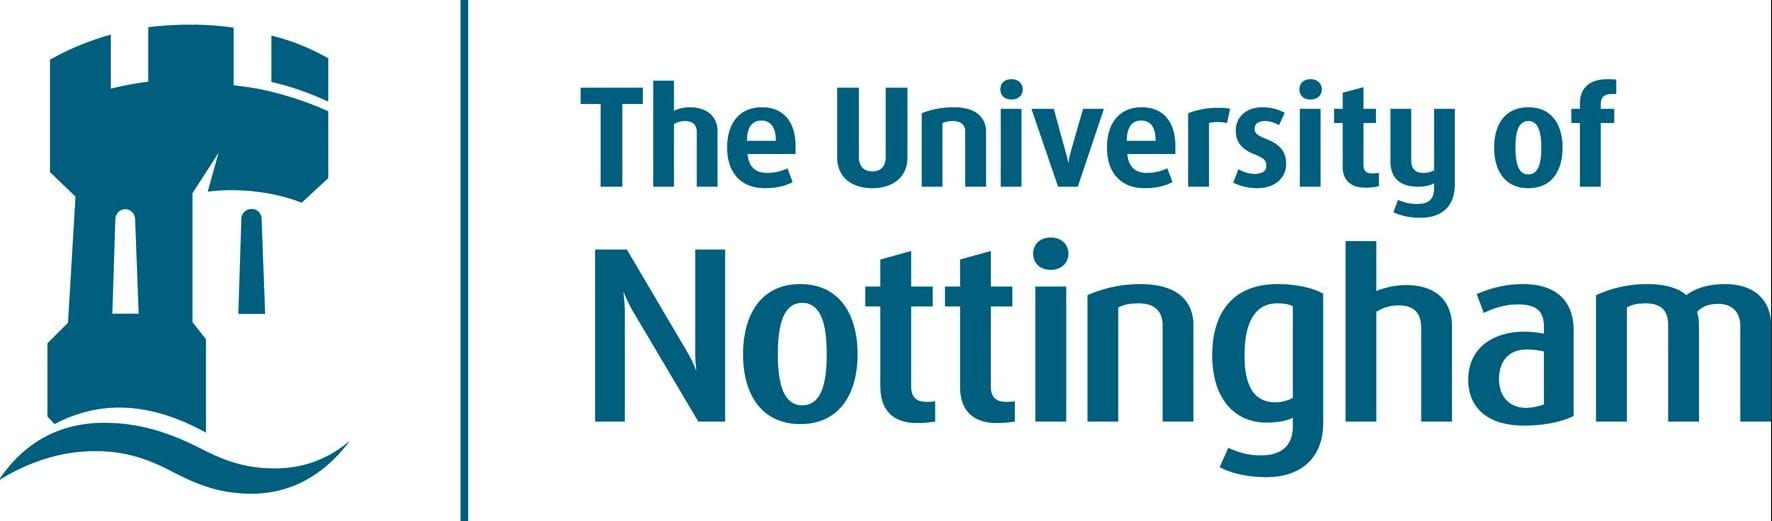 full university of nottingham logo